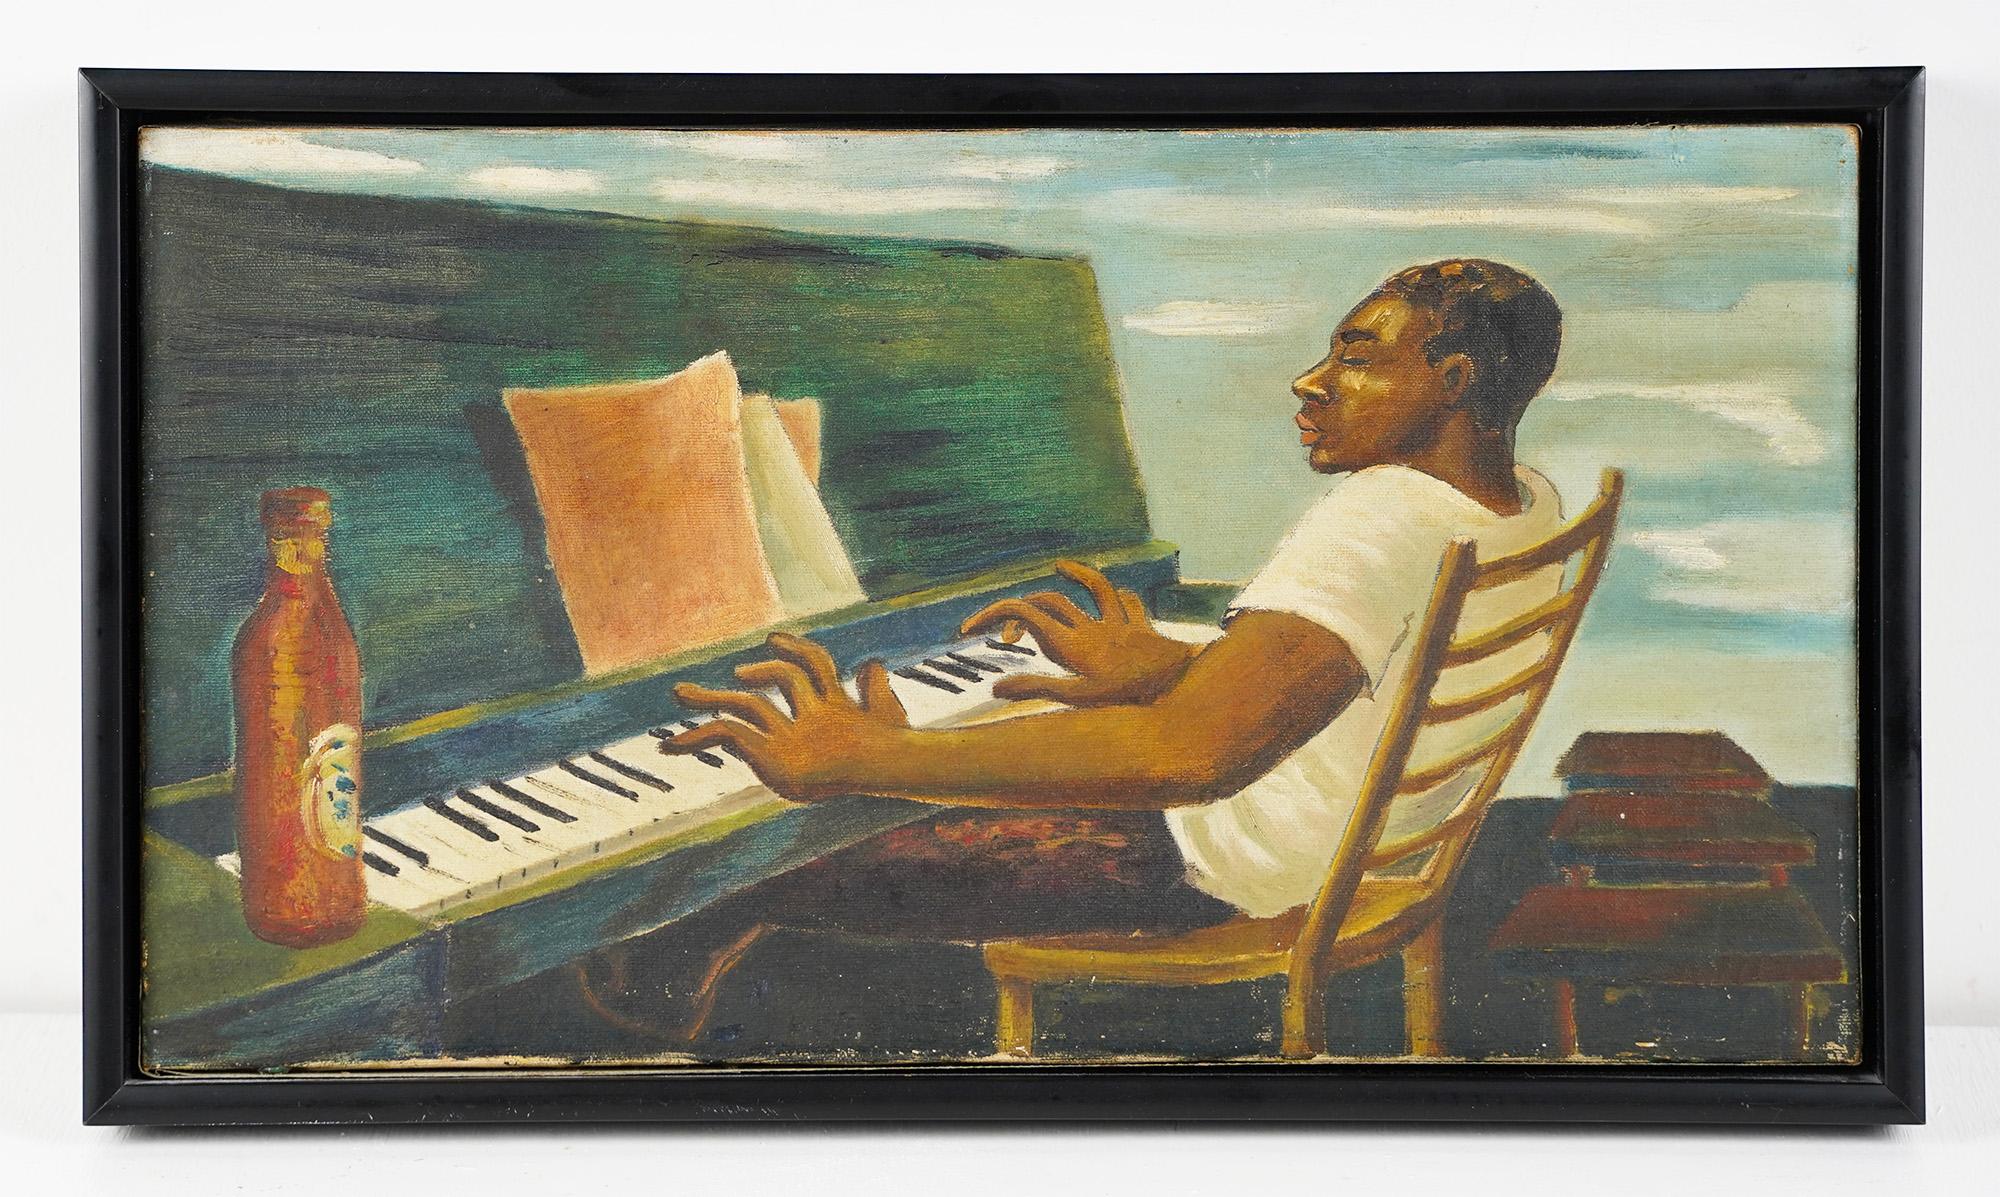 Ancienne peinture à l'huile surréaliste d'un portrait d'homme noir jouant du piano, école du Sud - Moderne Painting par Unknown